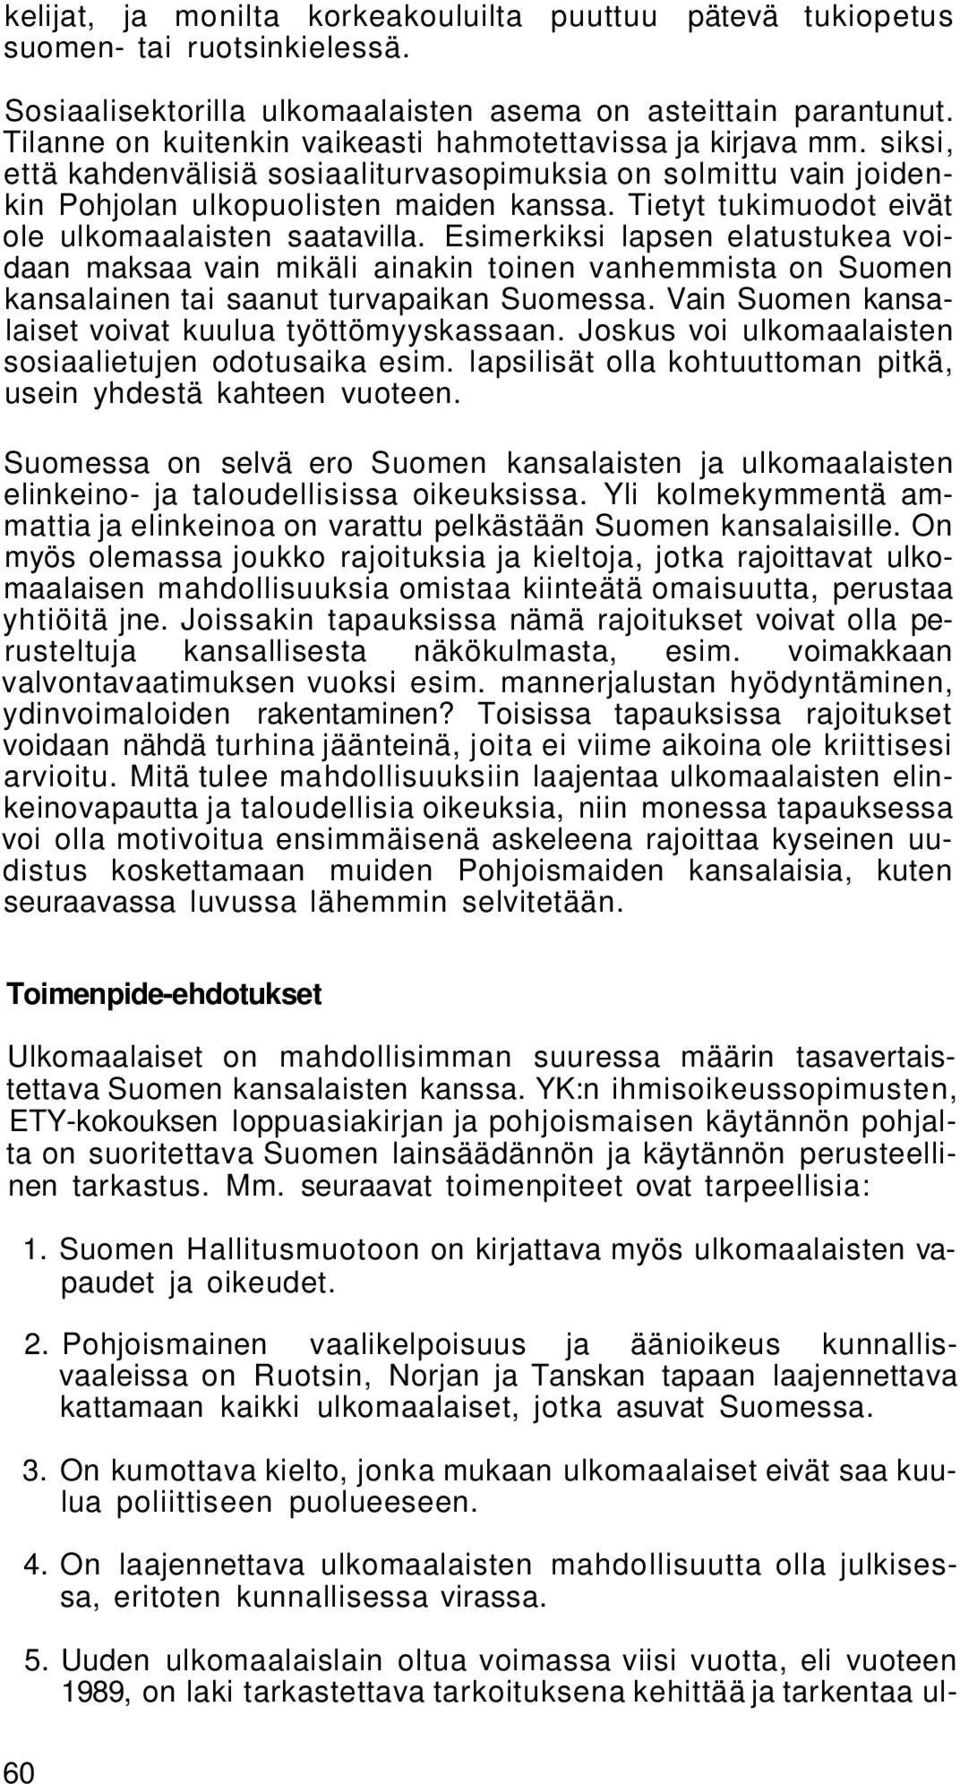 Tietyt tukimuodot eivät ole ulkomaalaisten saatavilla. Esimerkiksi lapsen elatustukea voidaan maksaa vain mikäli ainakin toinen vanhemmista on Suomen kansalainen tai saanut turvapaikan Suomessa.